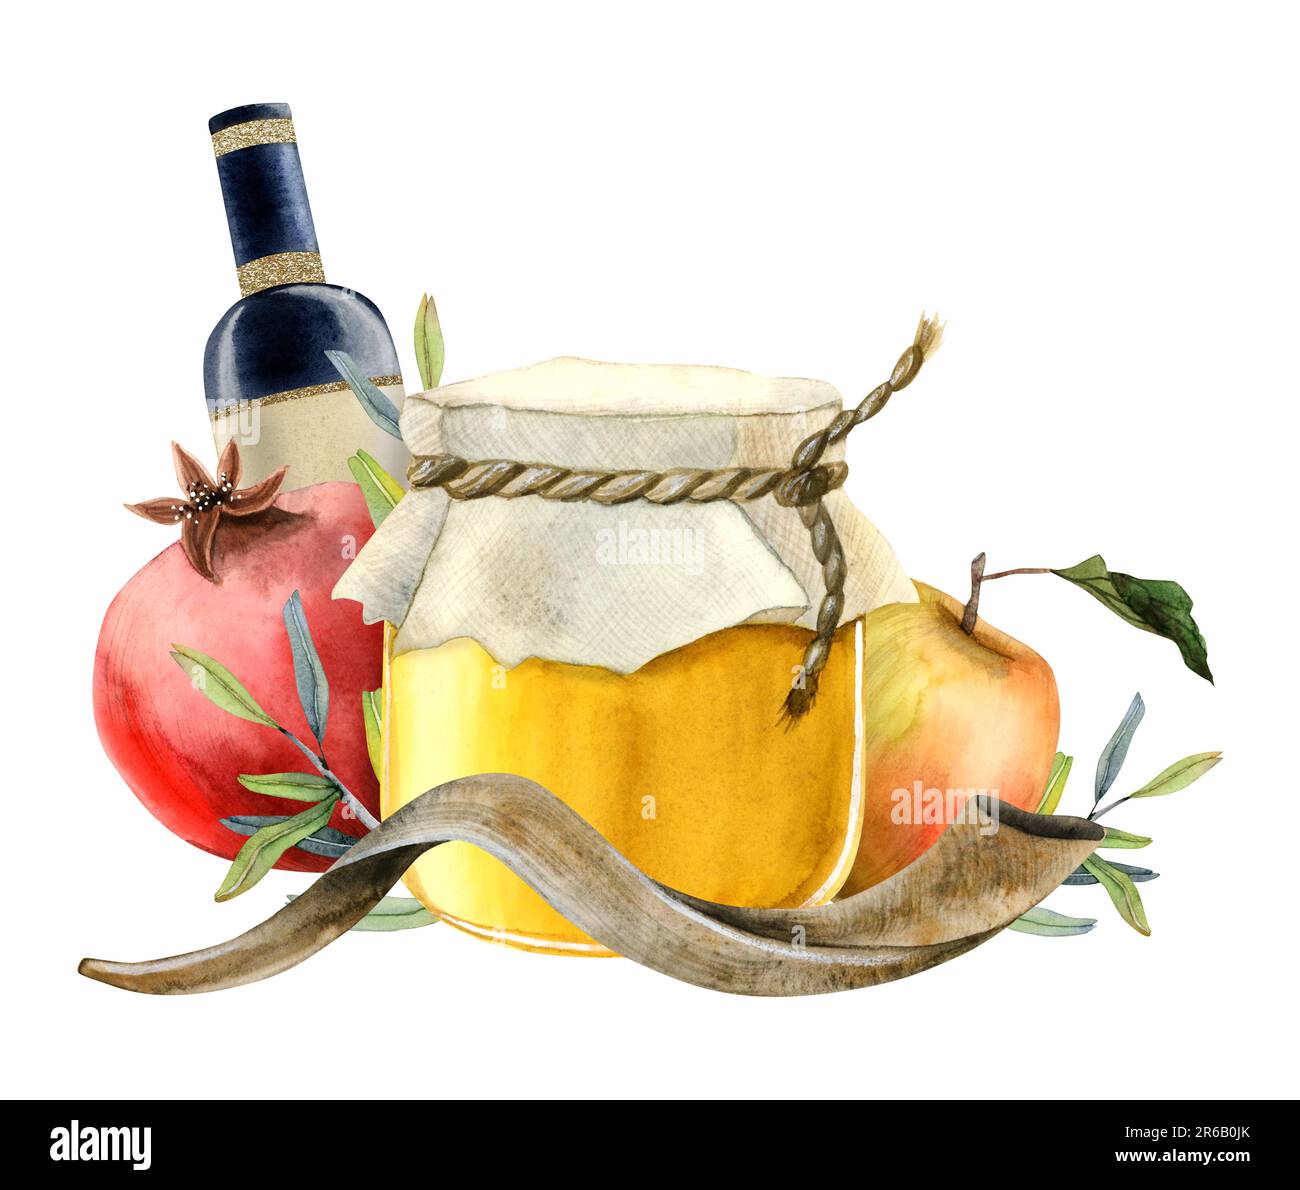 Buon modello di biglietto d'auguri Rosh Hashanah con miele, frutta di melograno, mela, shofar, illustrazione di acquerello del vino Foto Stock